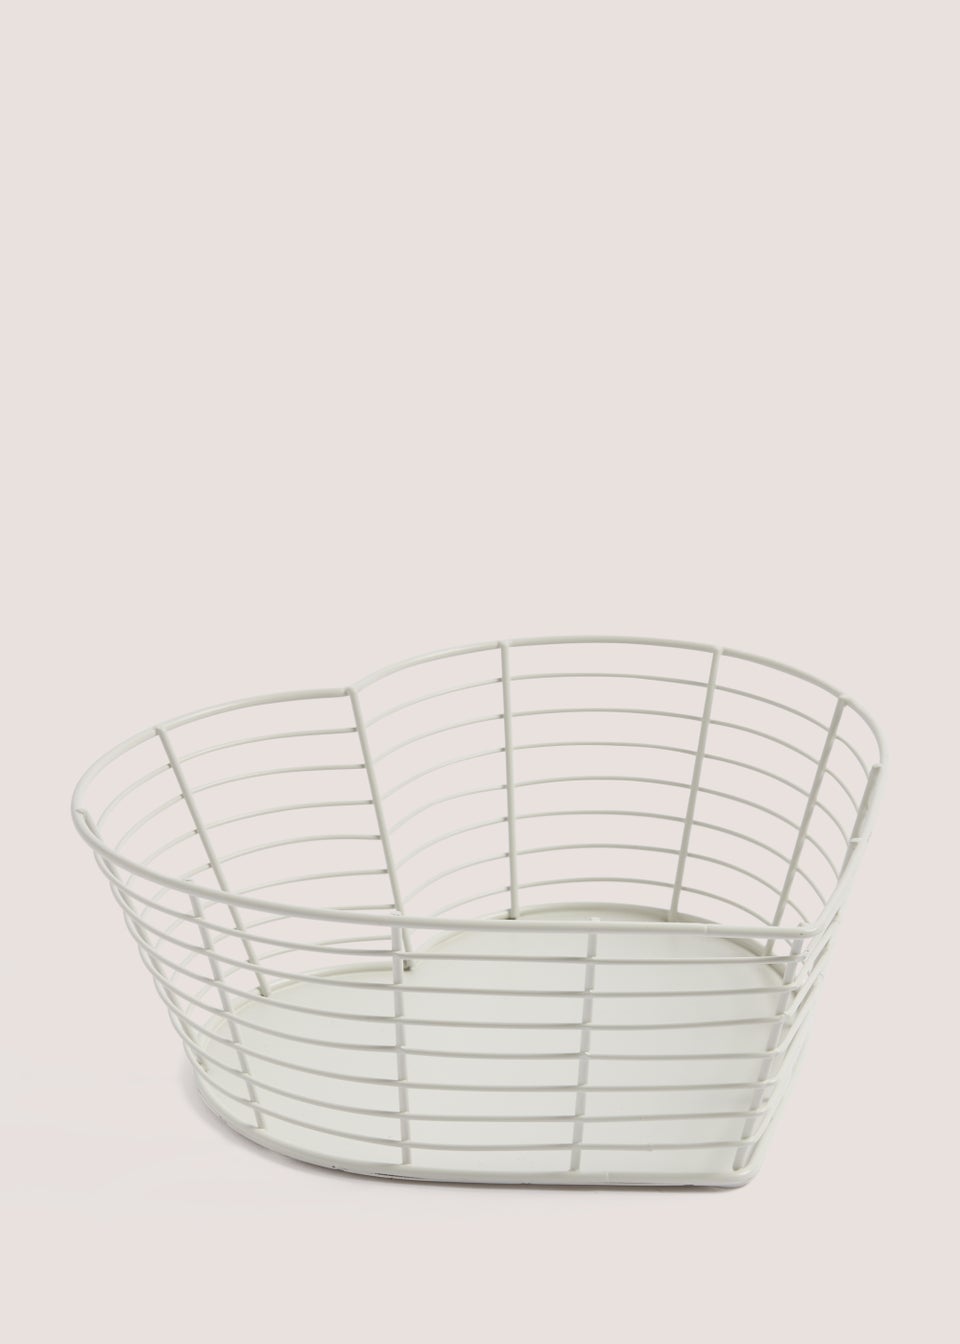 White Heart Wire Basket (26cm x 25cm x 10cm)